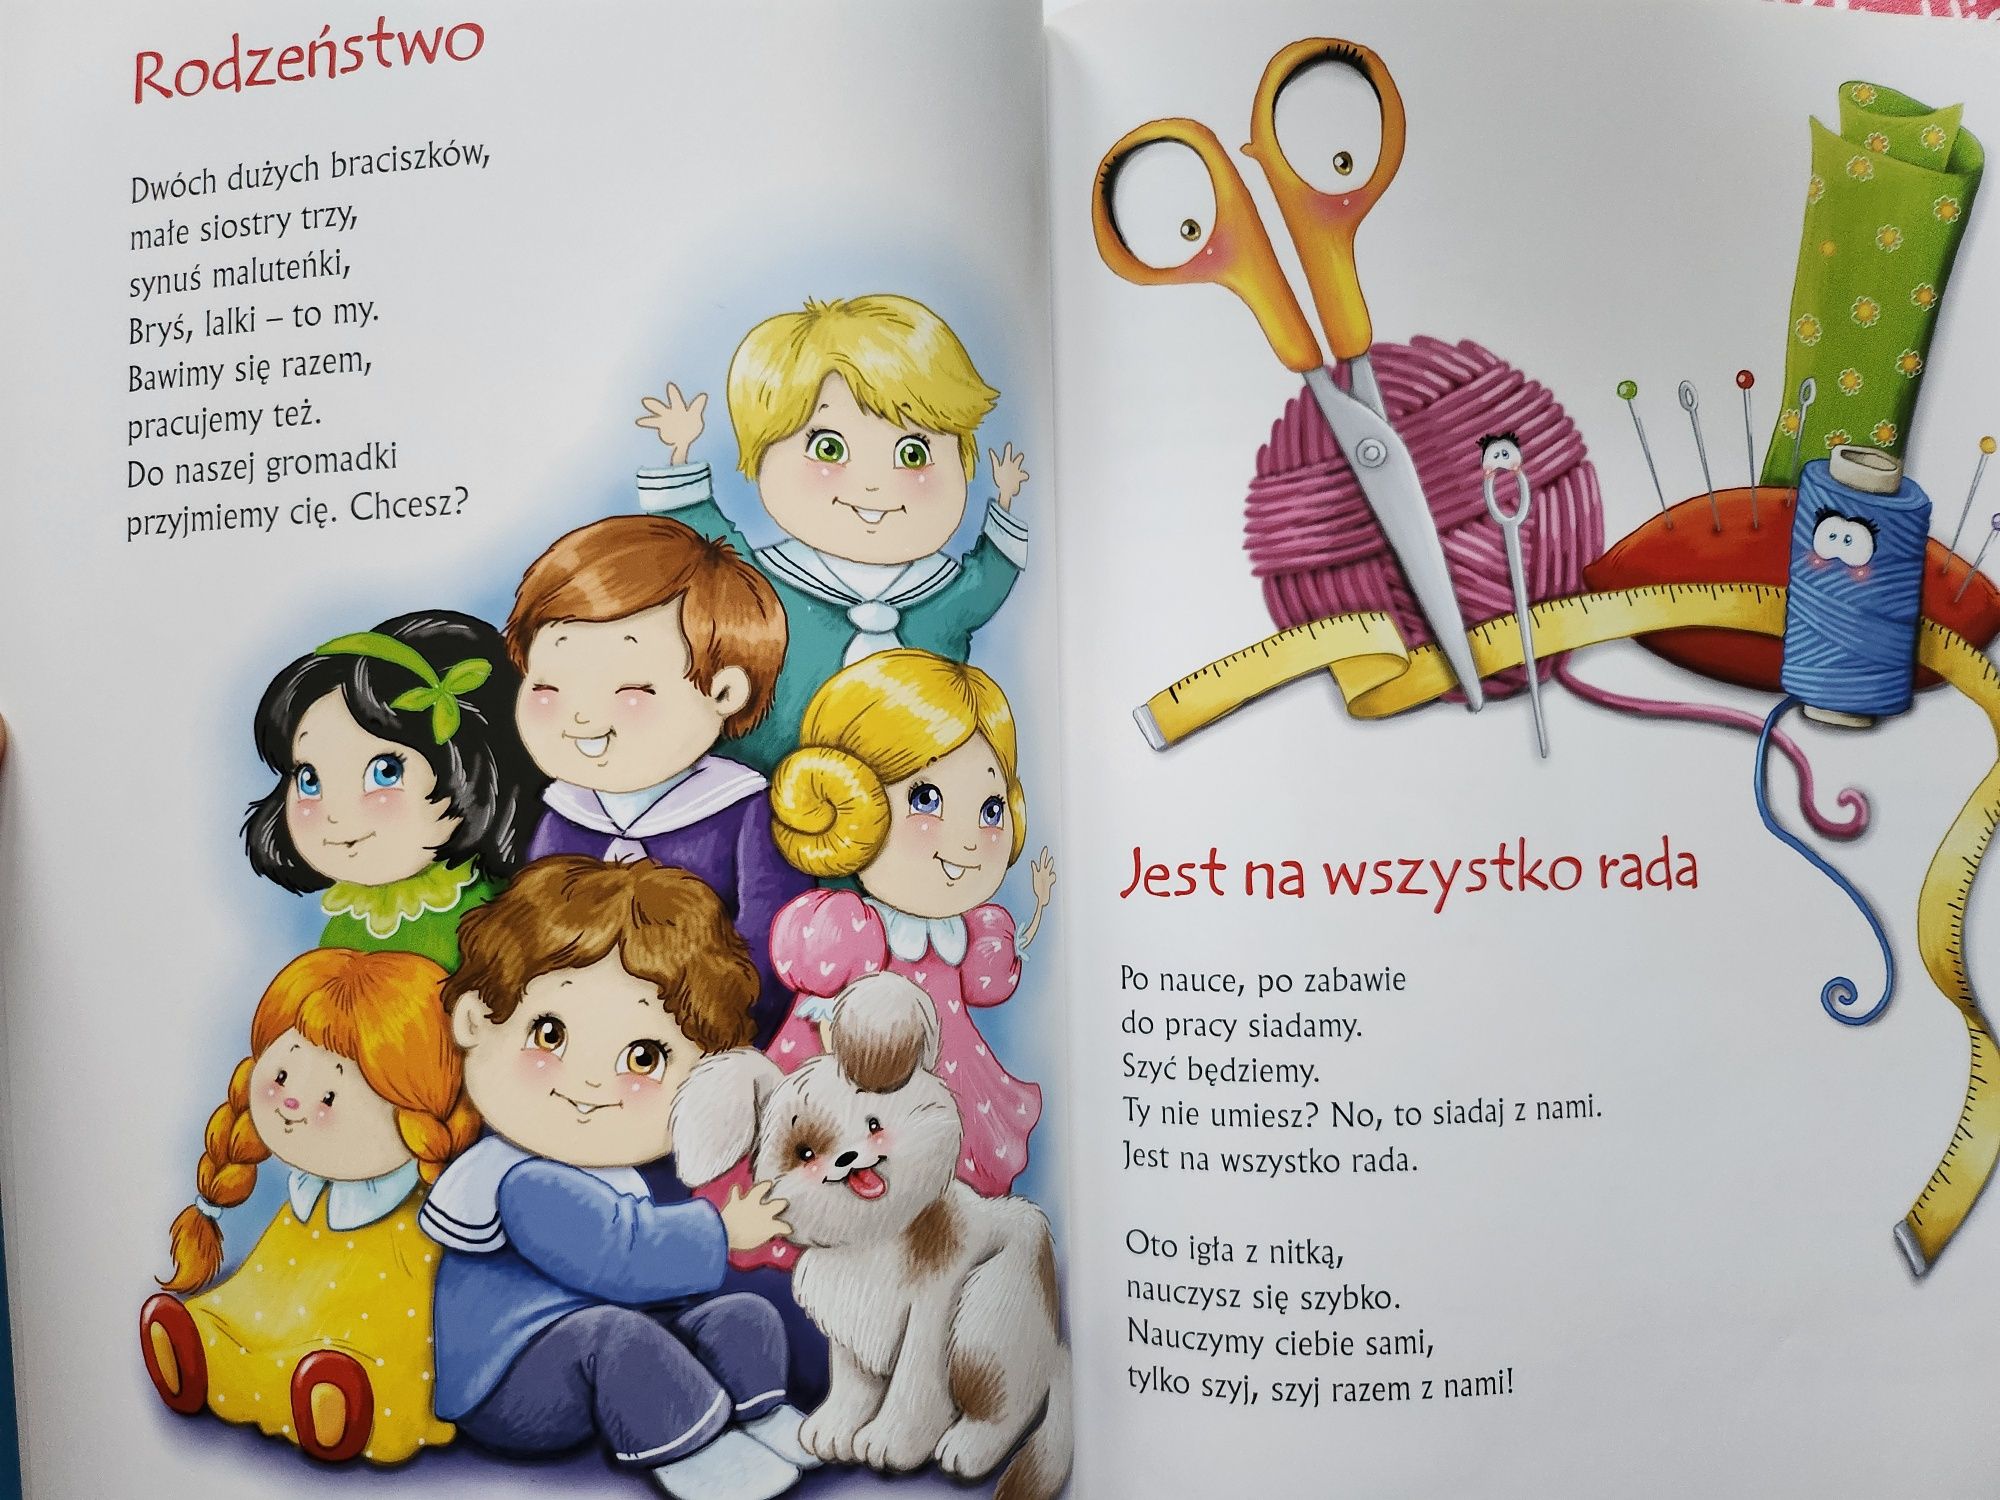 Książka Polscy Poeci wiersze dla dzieci